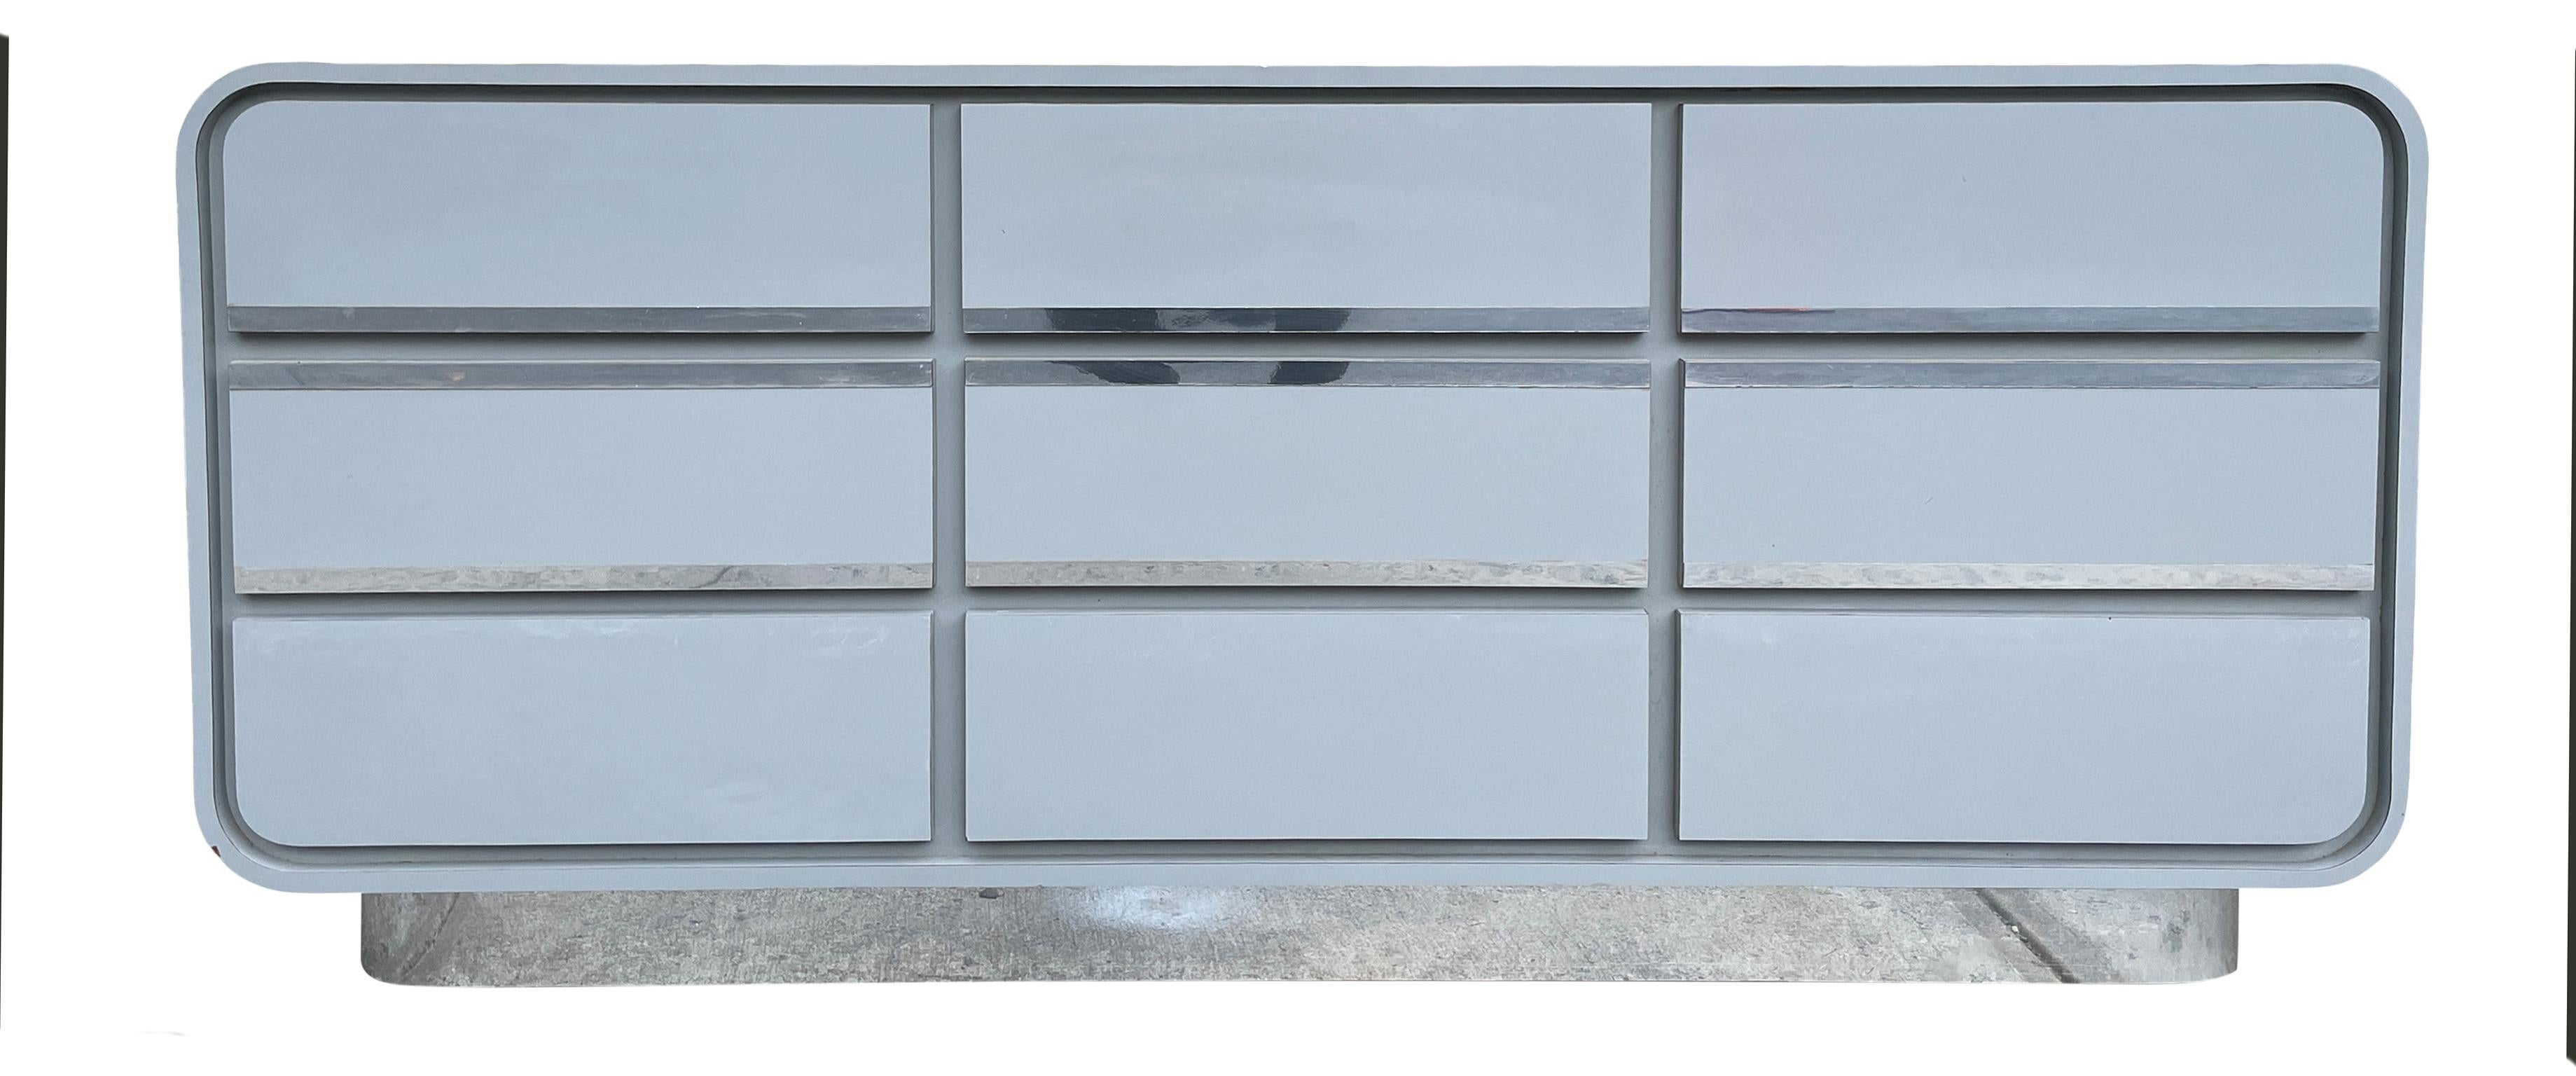 Très long stratifié blanc mat gris-bleu brillant et garniture chromée design cascade crédence 9 tiroirs, circa 1980 custom made. Très propre à l'intérieur et à l'extérieur. Regardez les photos. Cette unité est construite de façon très solide et